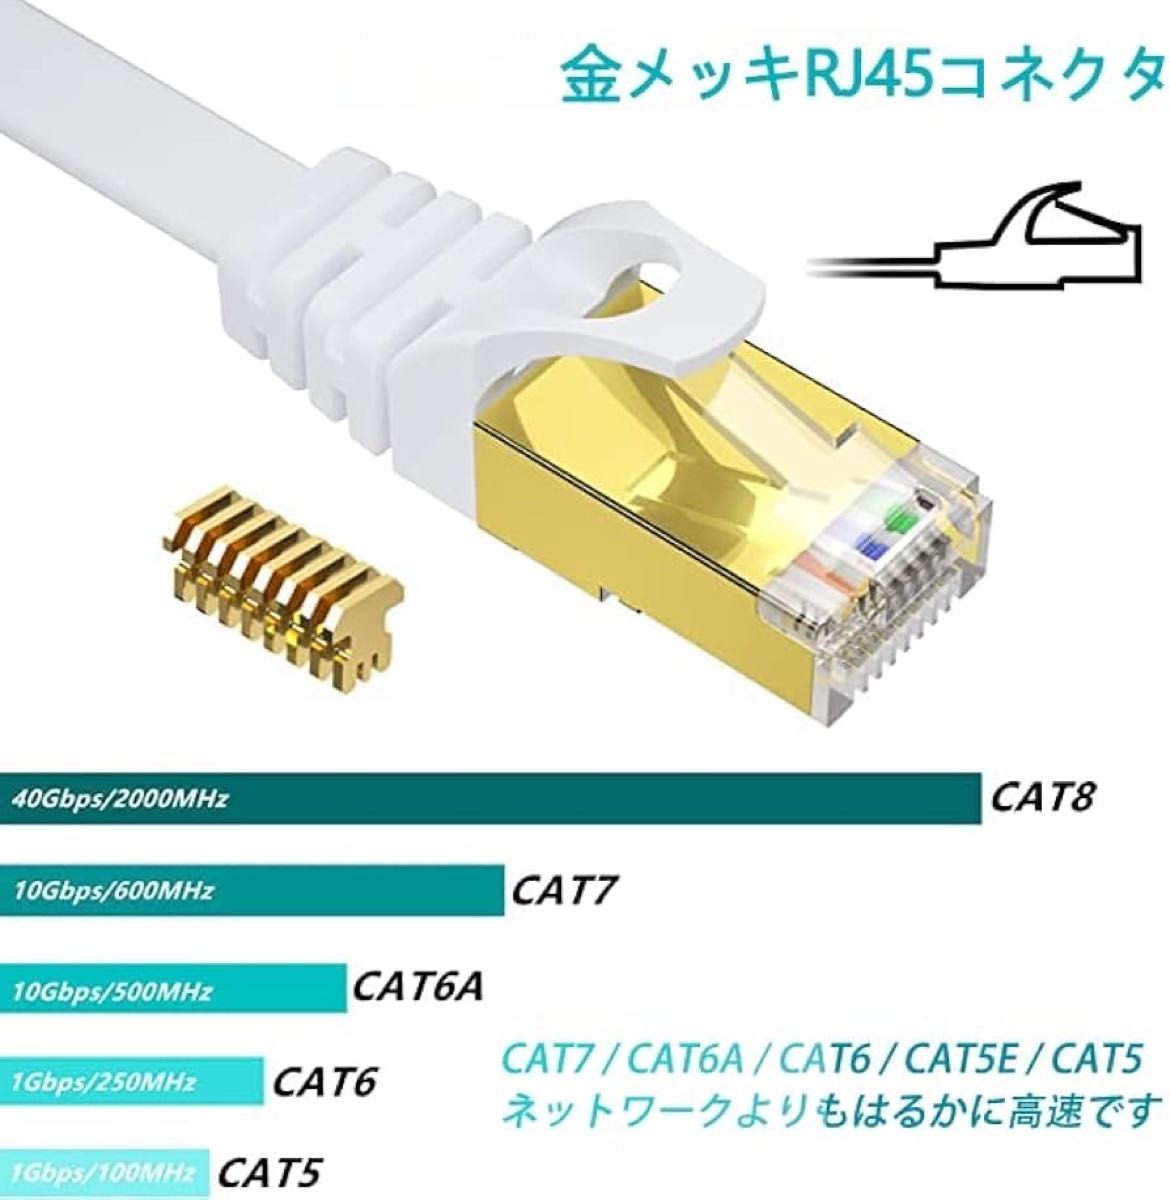 BUSOHE Cat8 LANケーブル 3M 2本セット フラットケーブル 40Gbps 2000MHz RJ45 コネクタ付き 